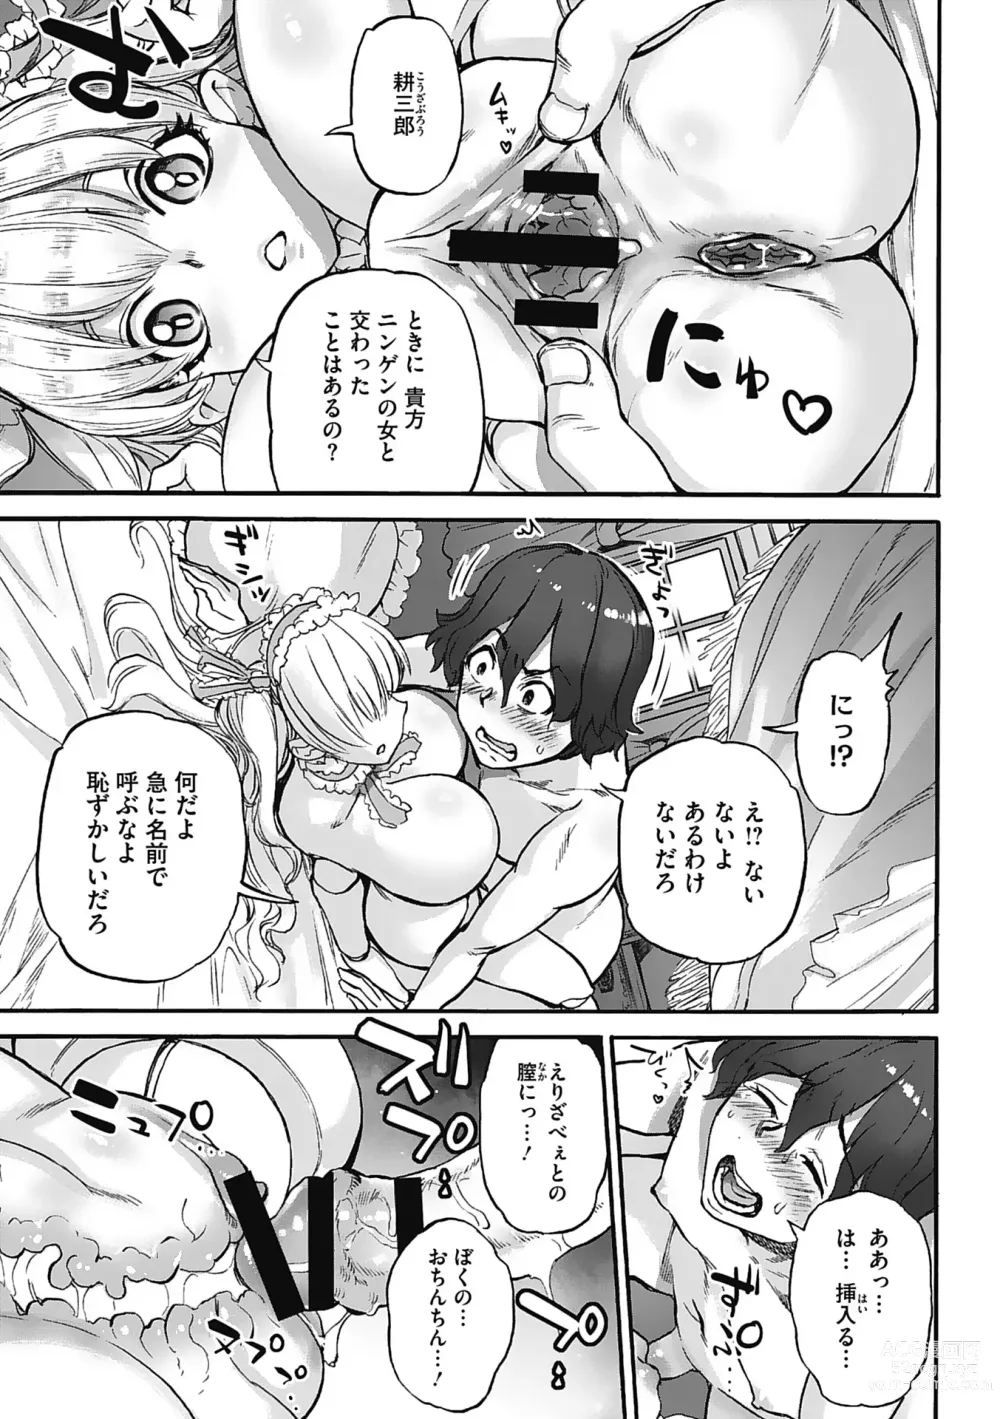 Page 191 of manga Oumagatoki - Ishu Konin Roman Tan -